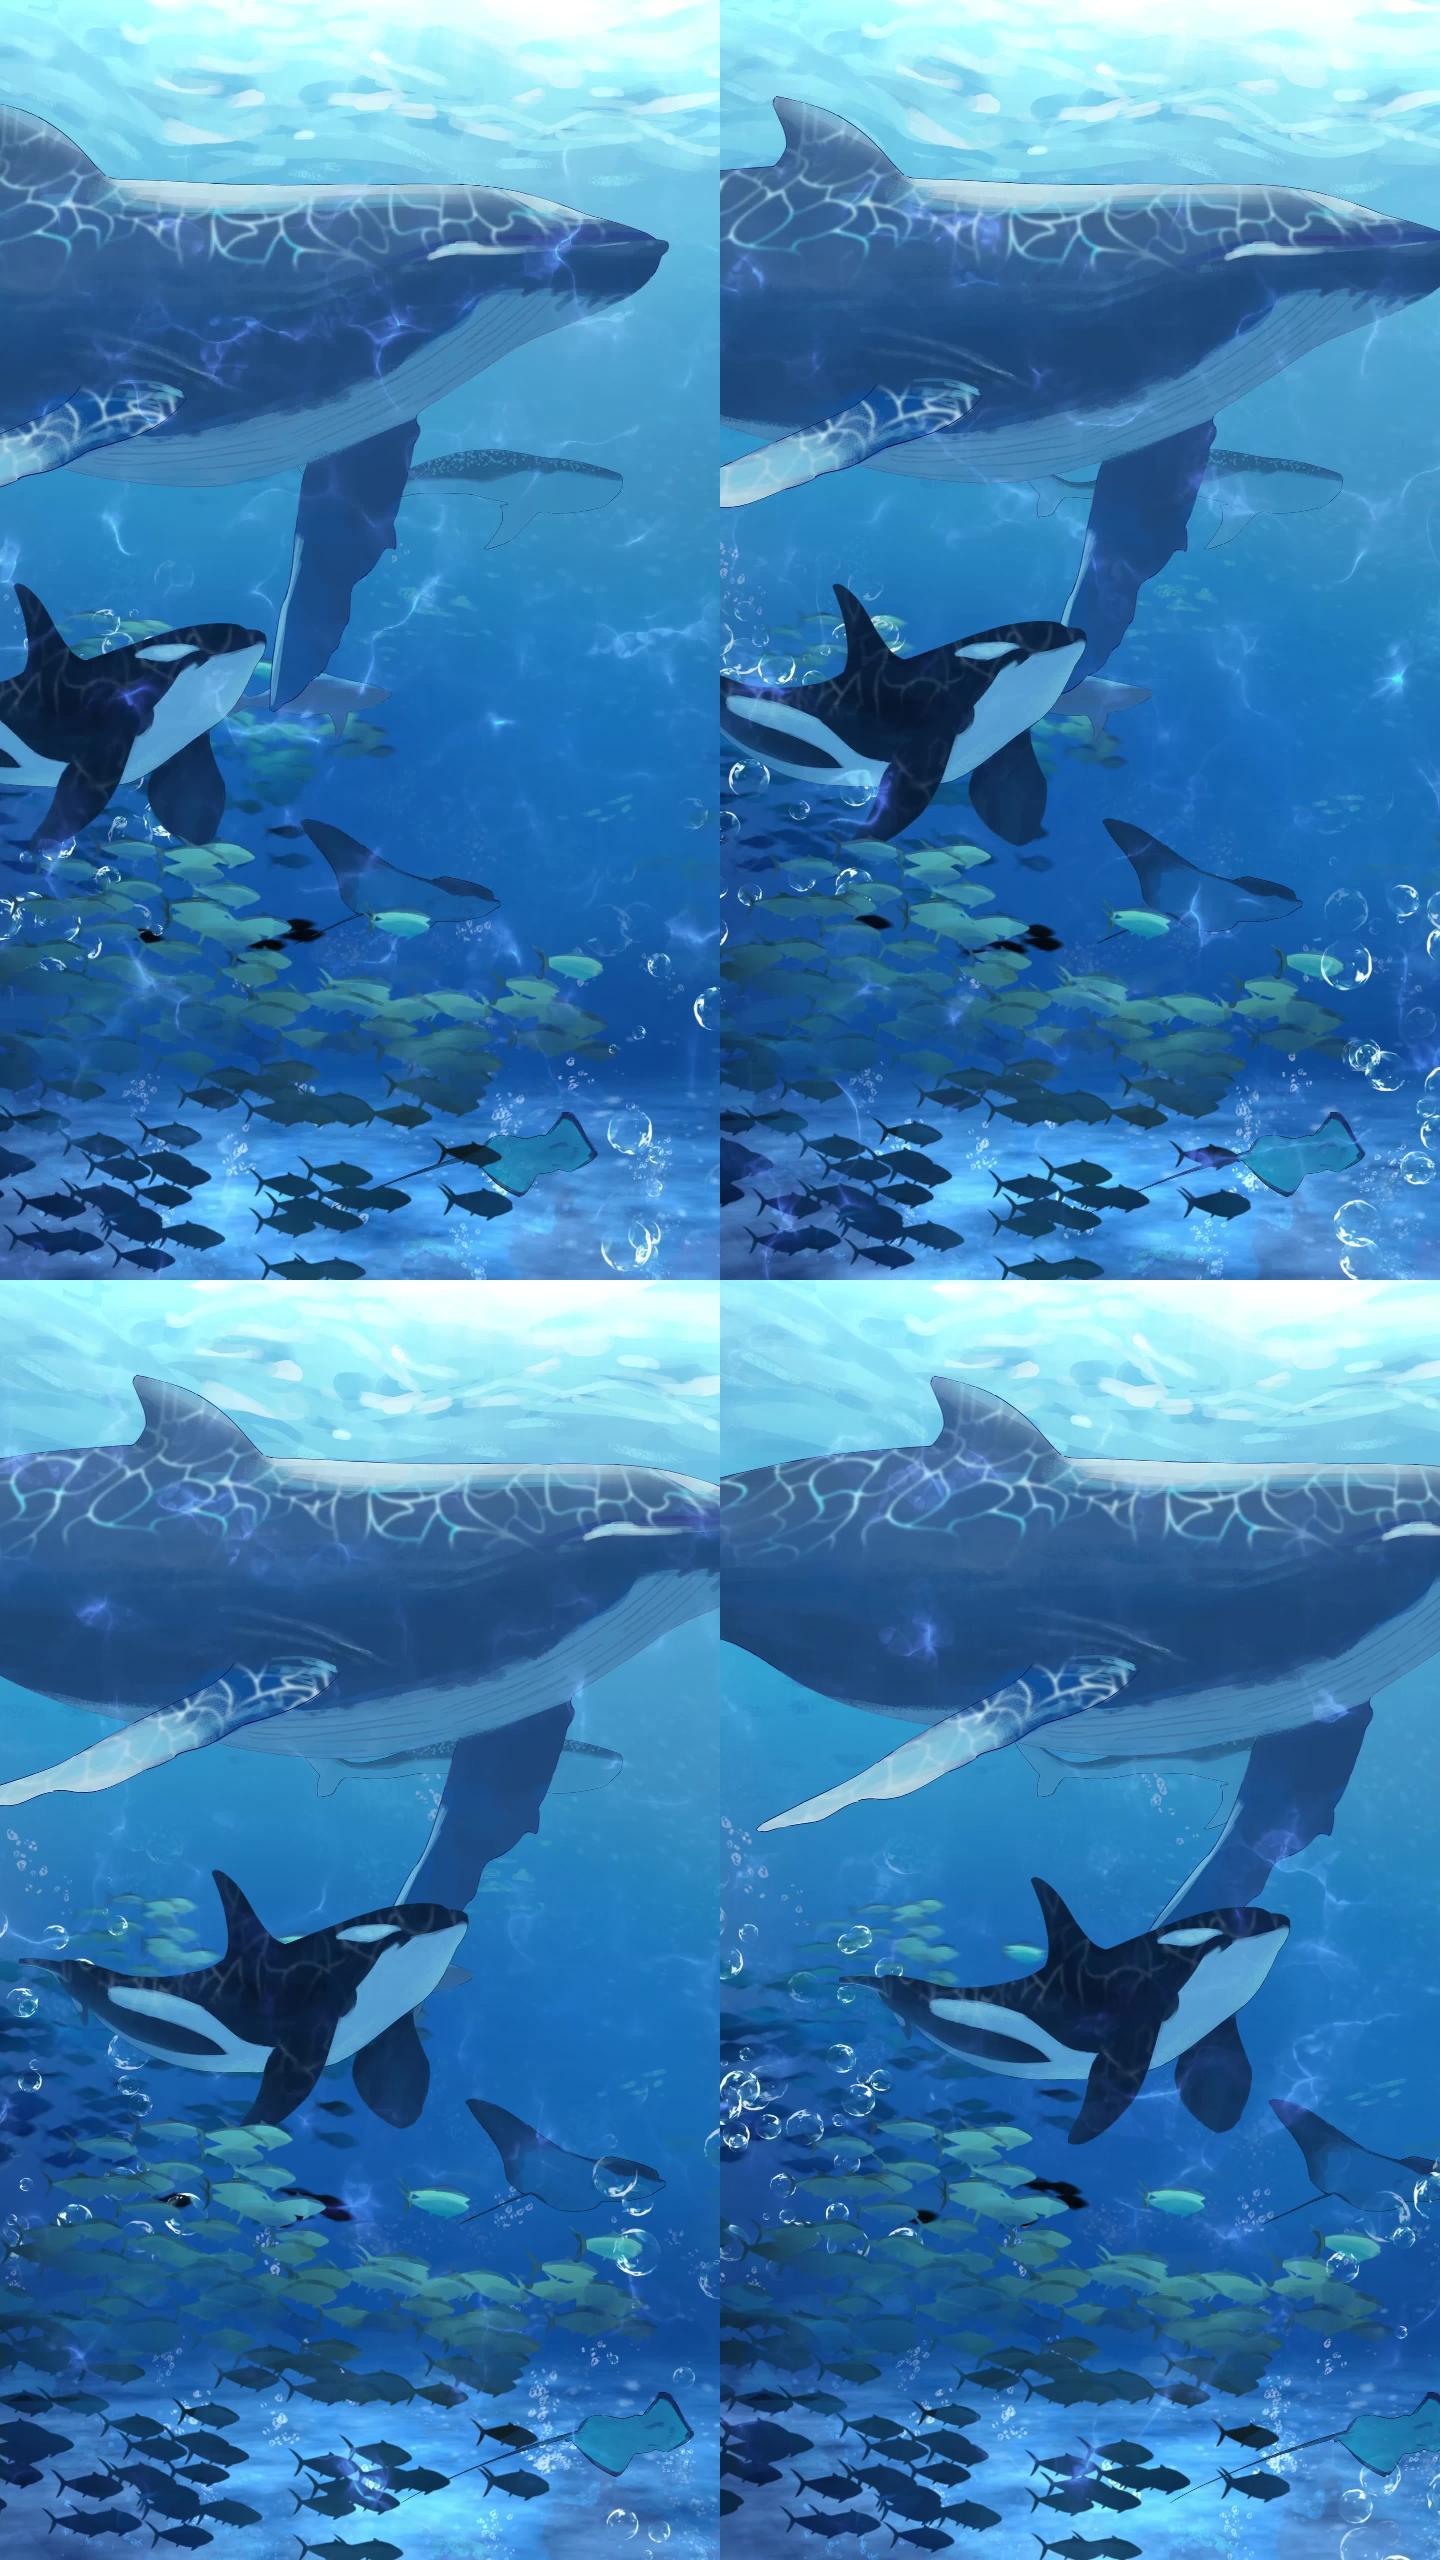 二次元卡通动态背景 海底 鲸鱼群